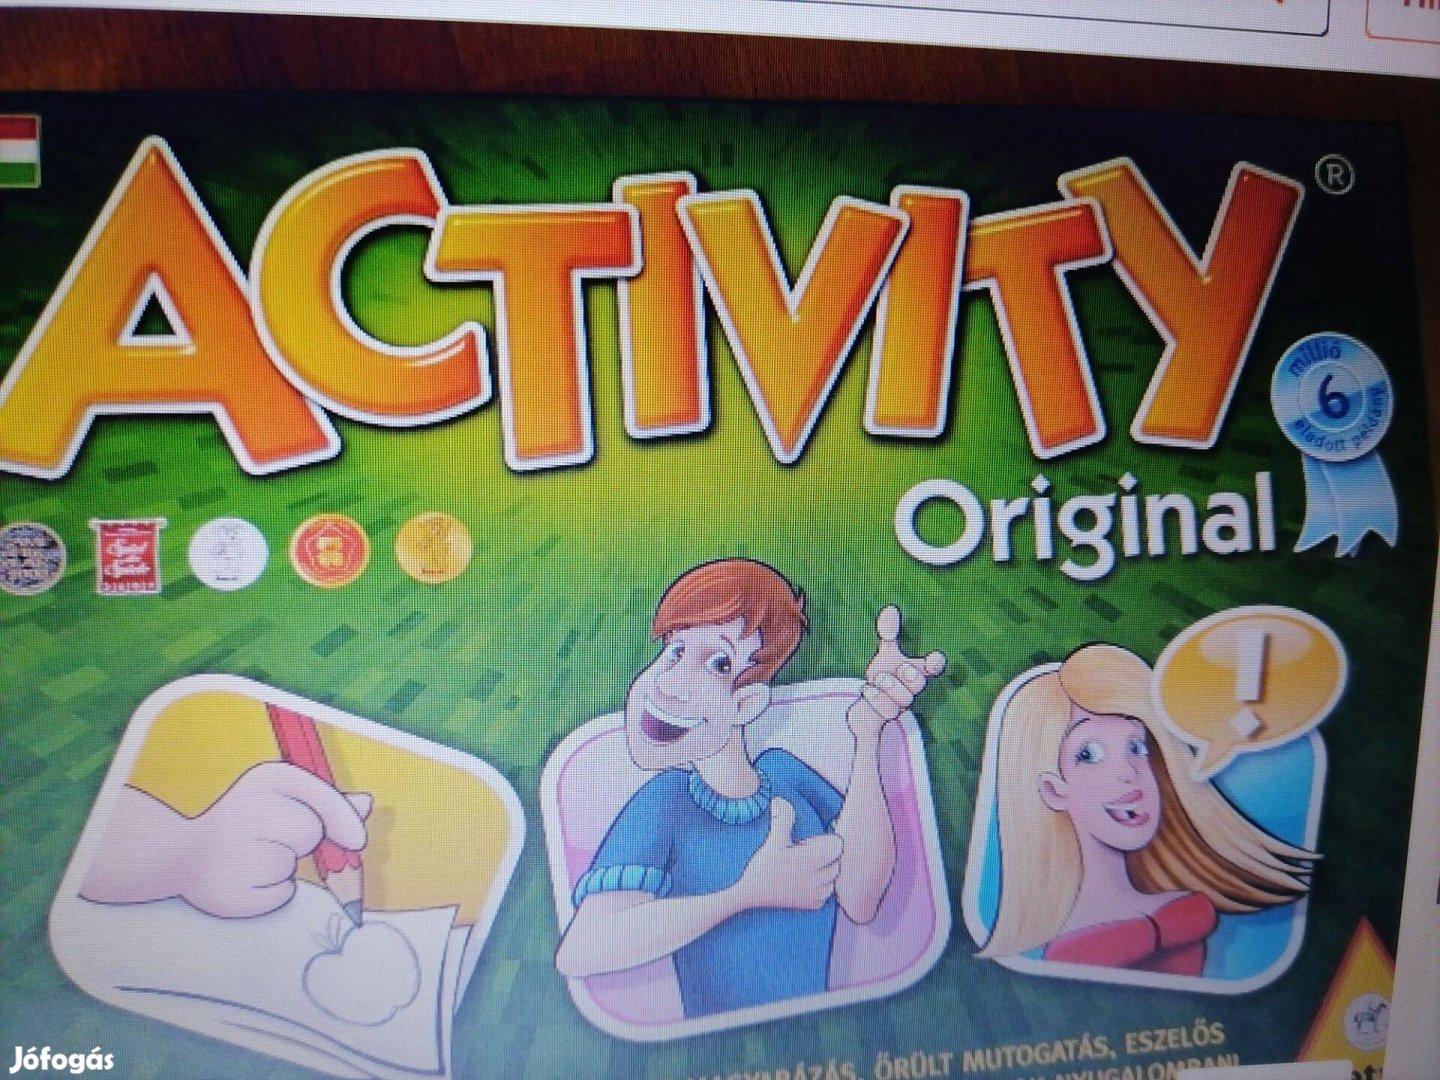 Activity Original társasjáték